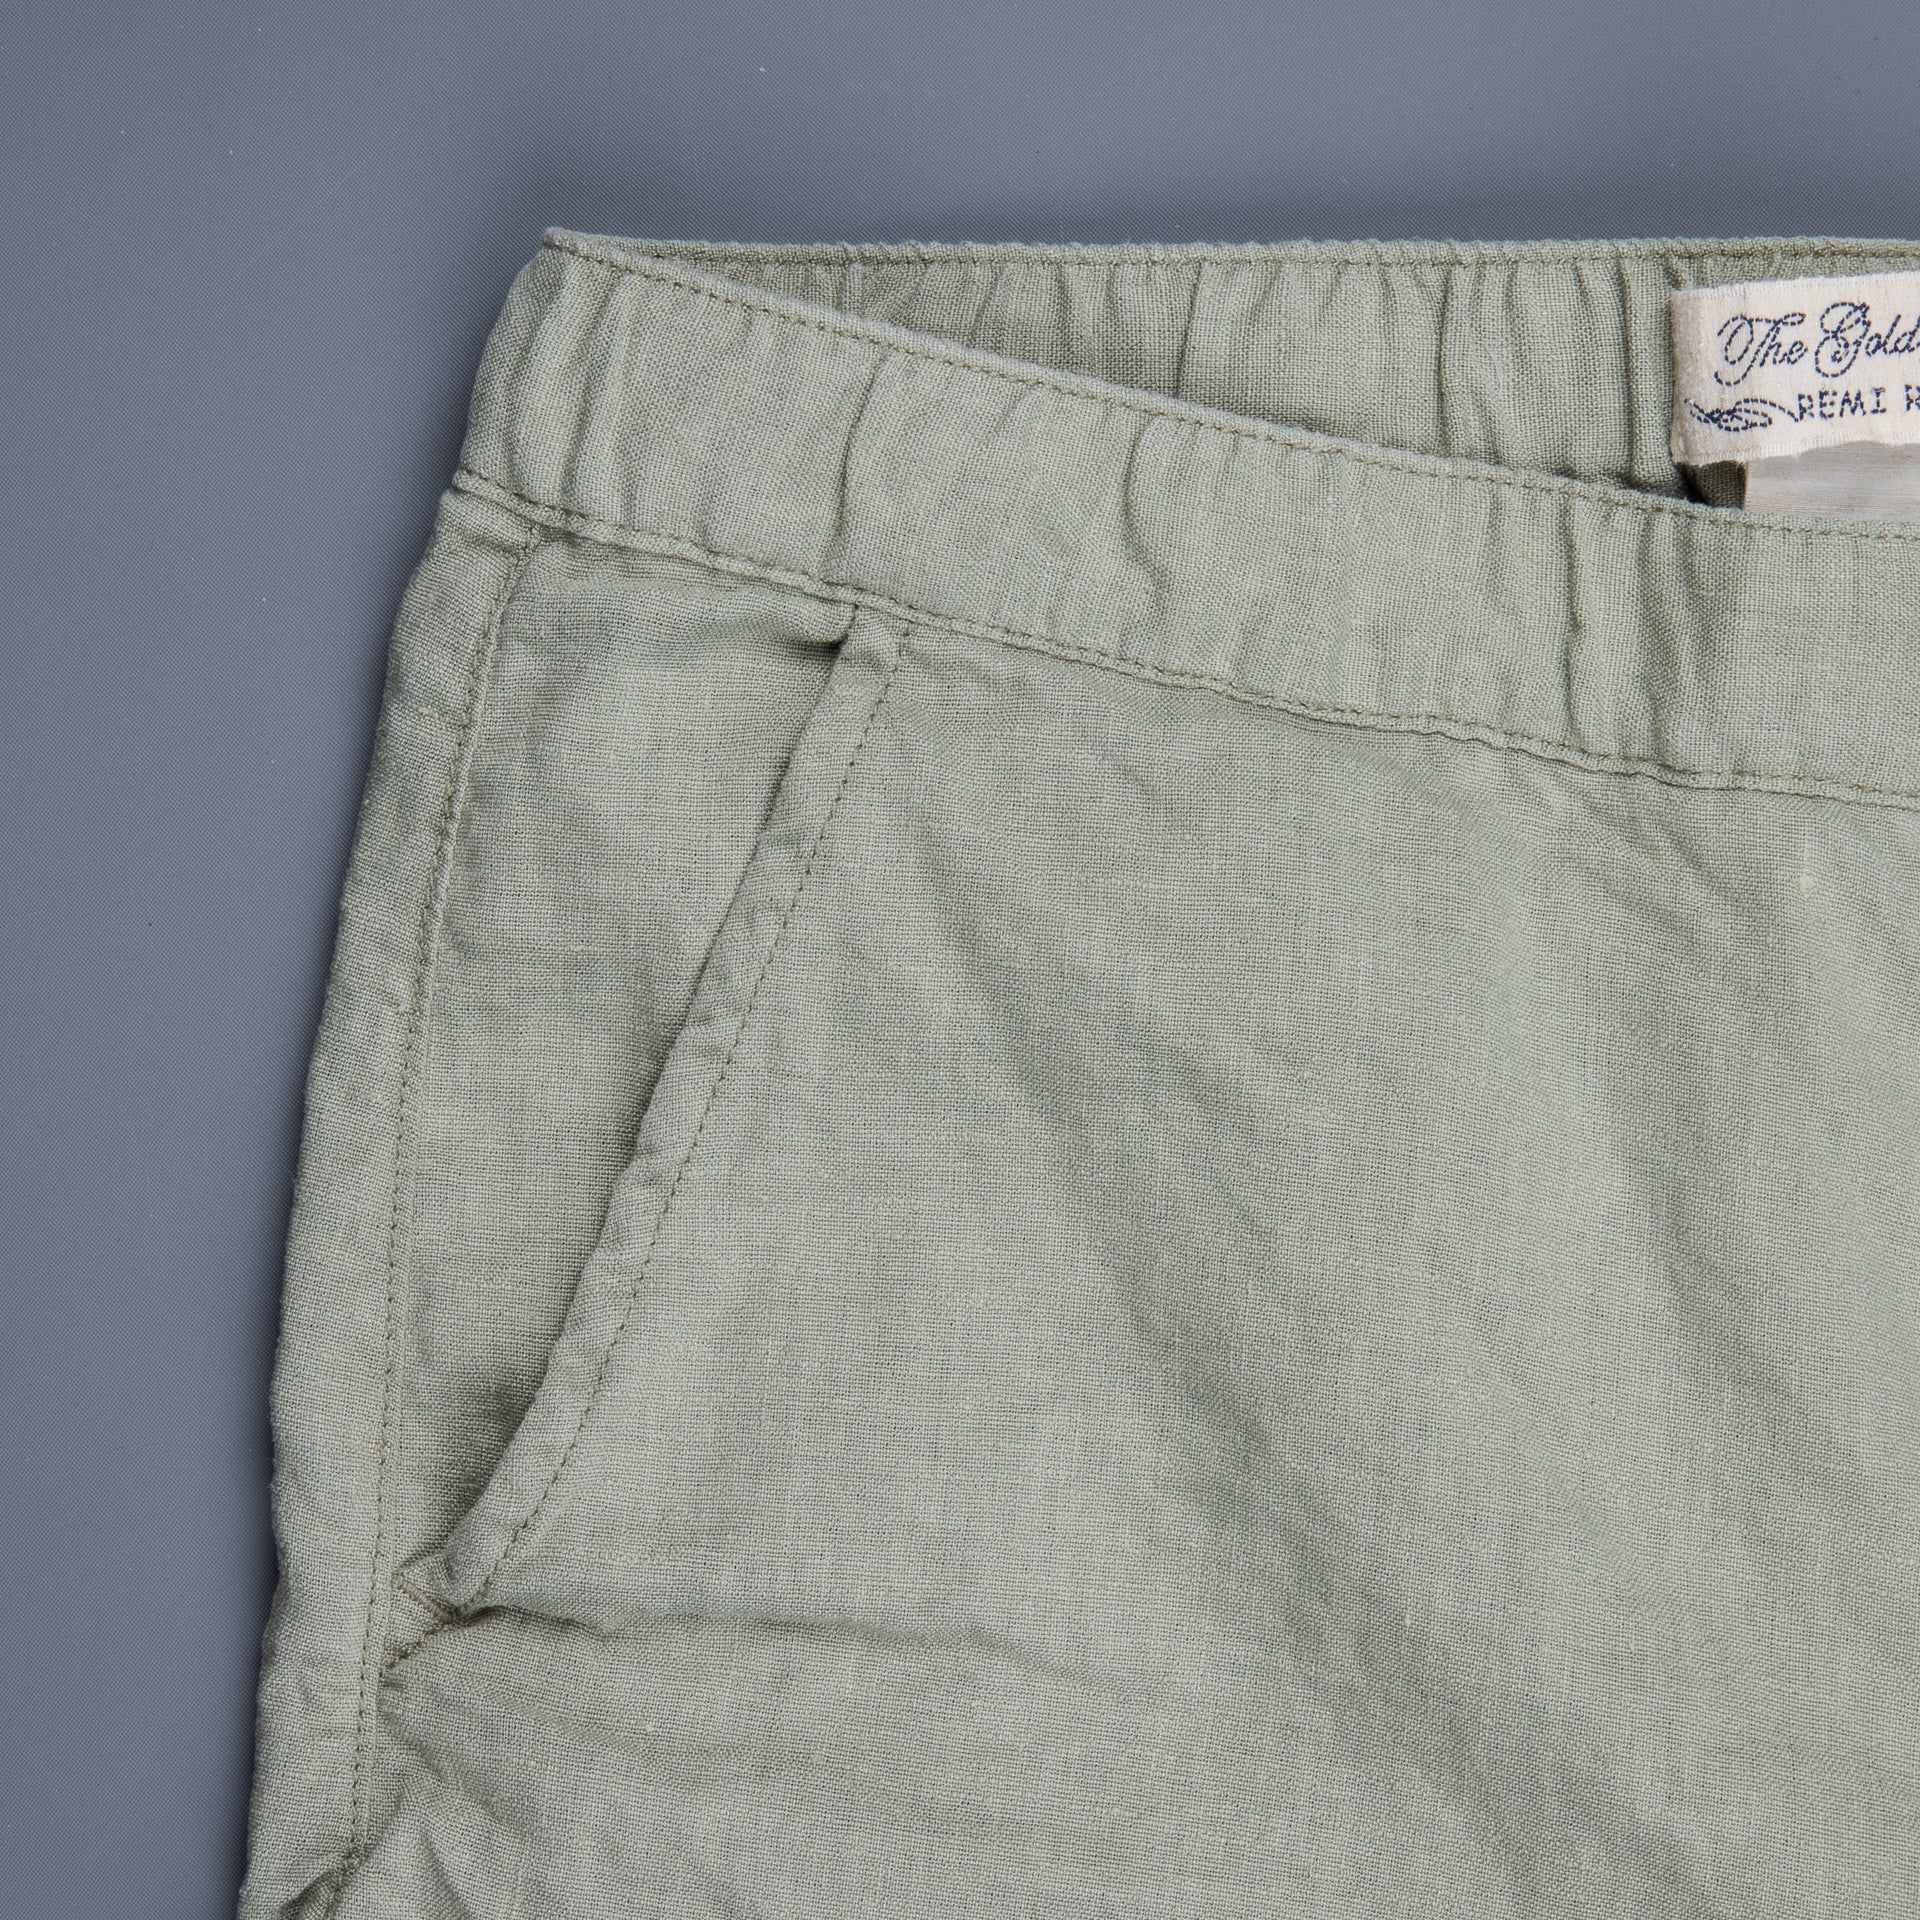 Remi Relief Wonder Linen Easy shorts Grage